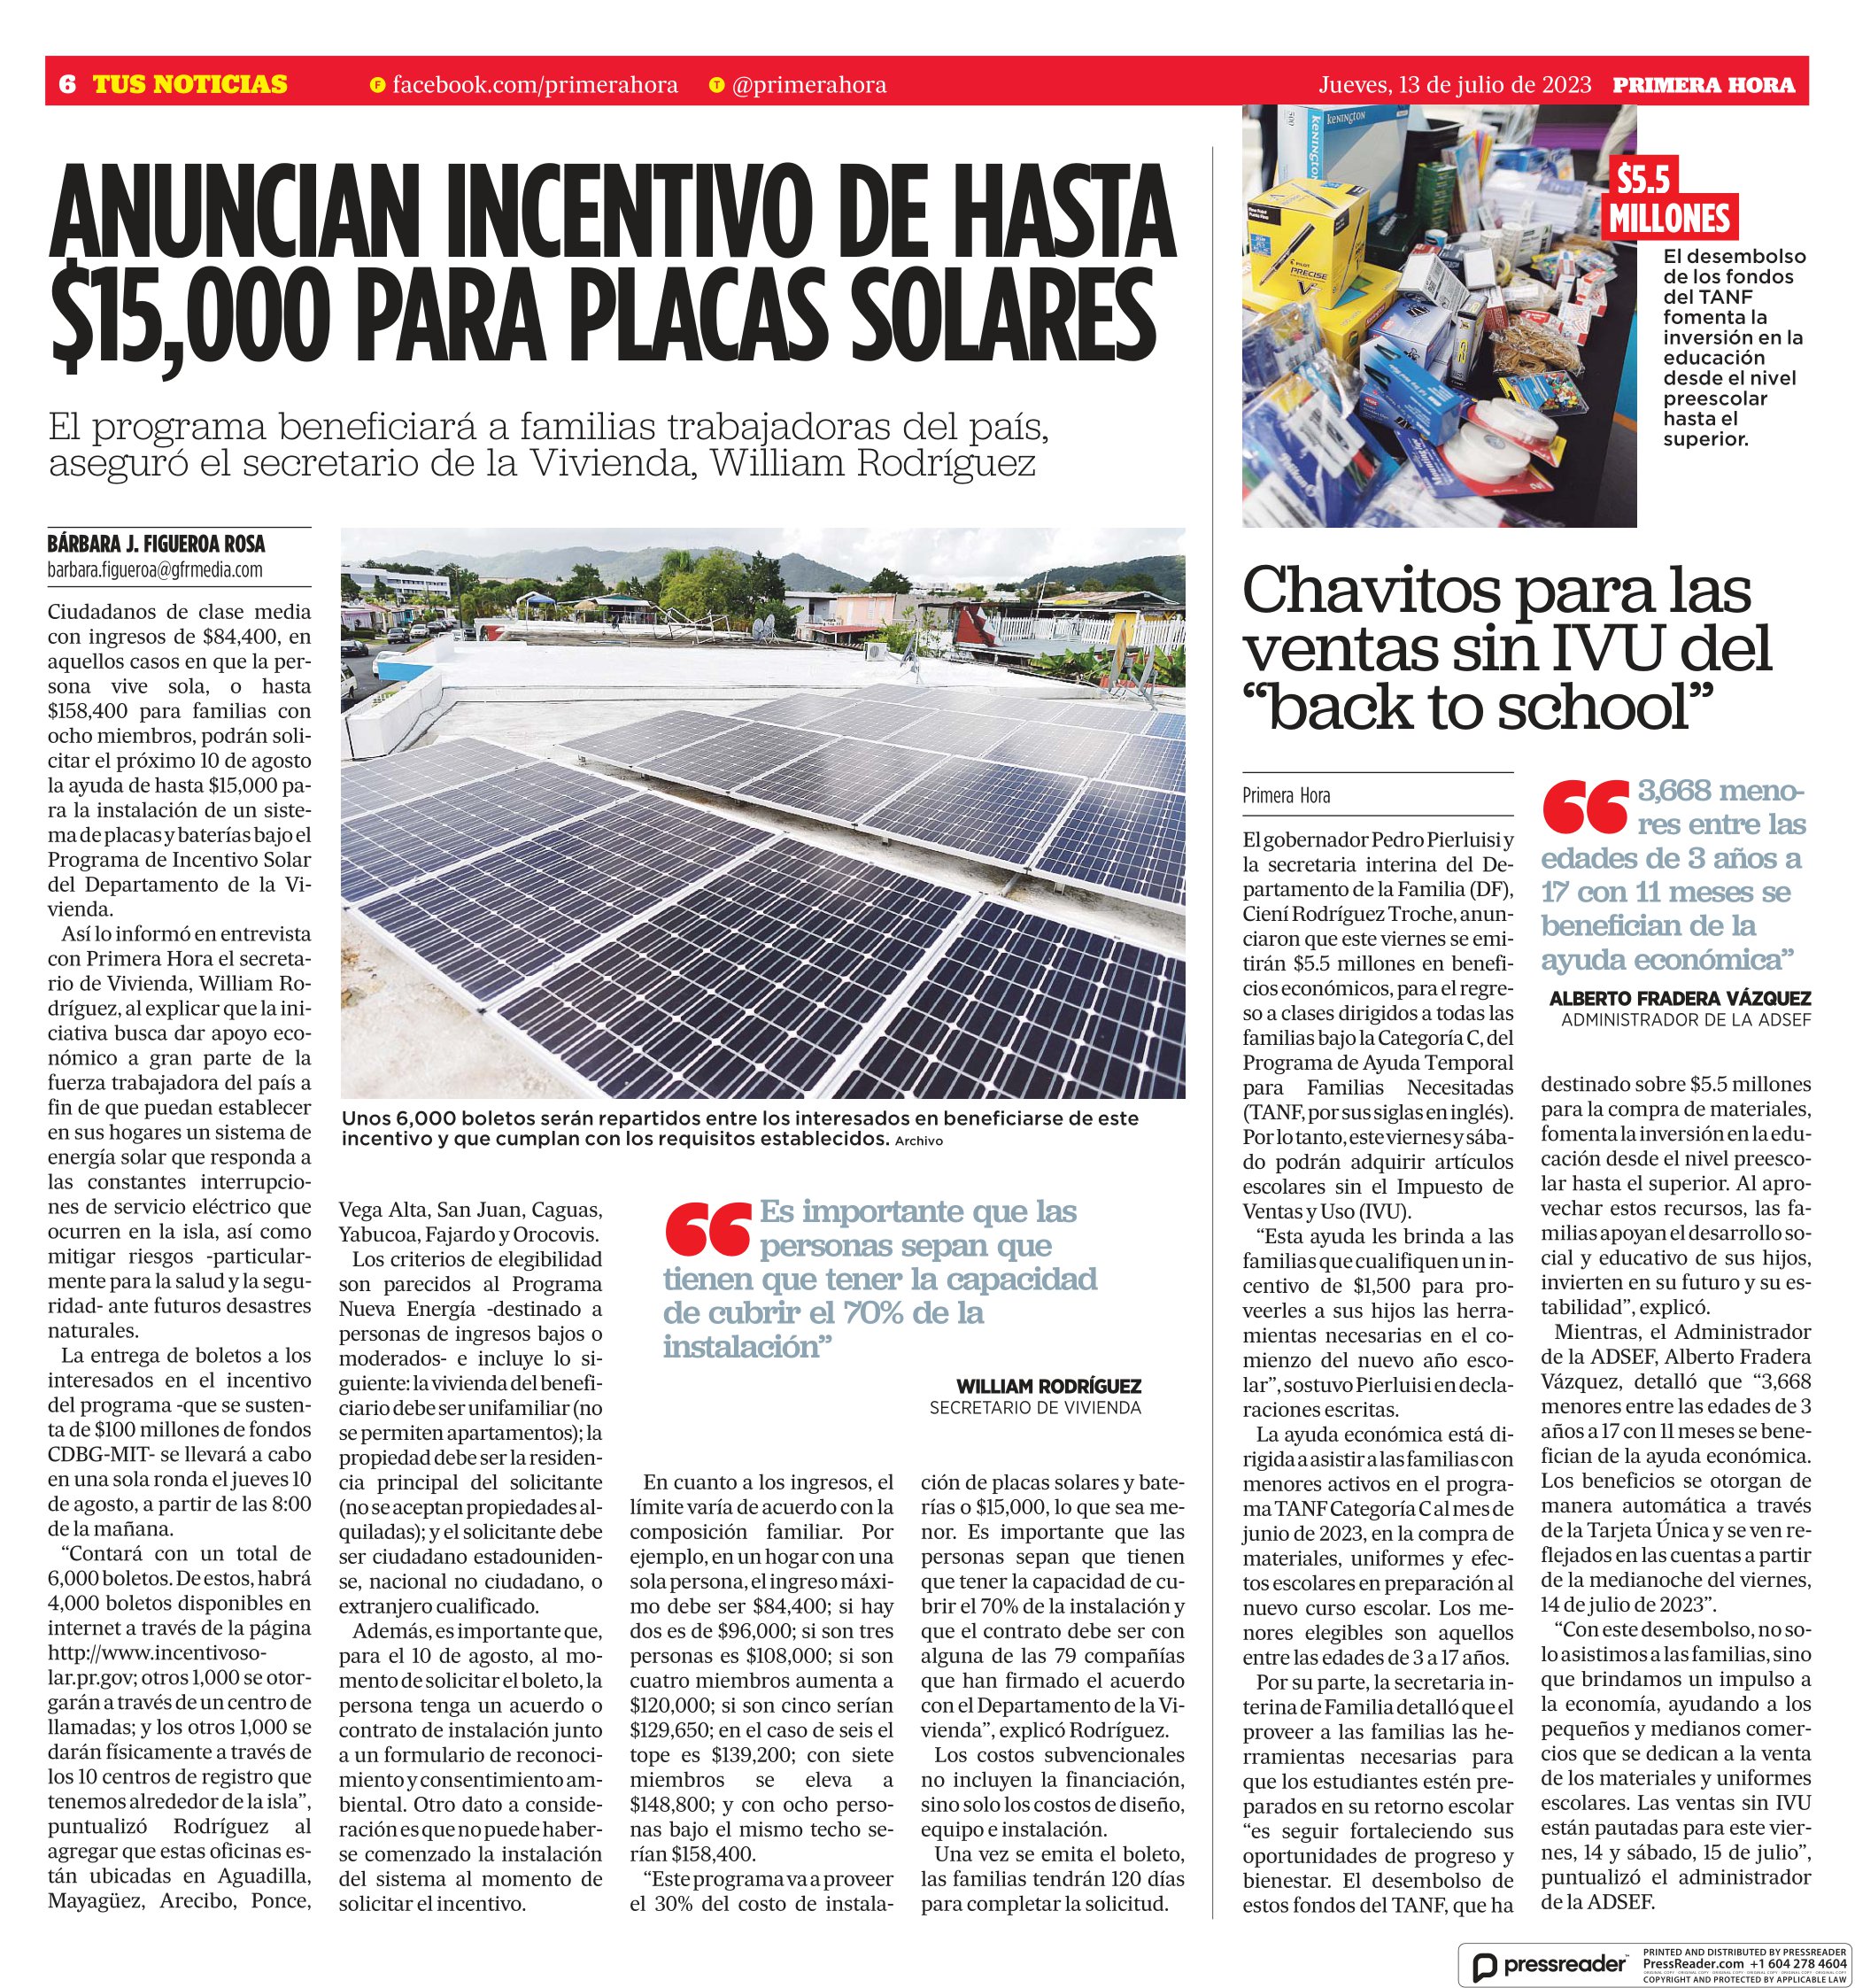 Anuncian Incentivo De Hasta $15,000 Para Placas Solares